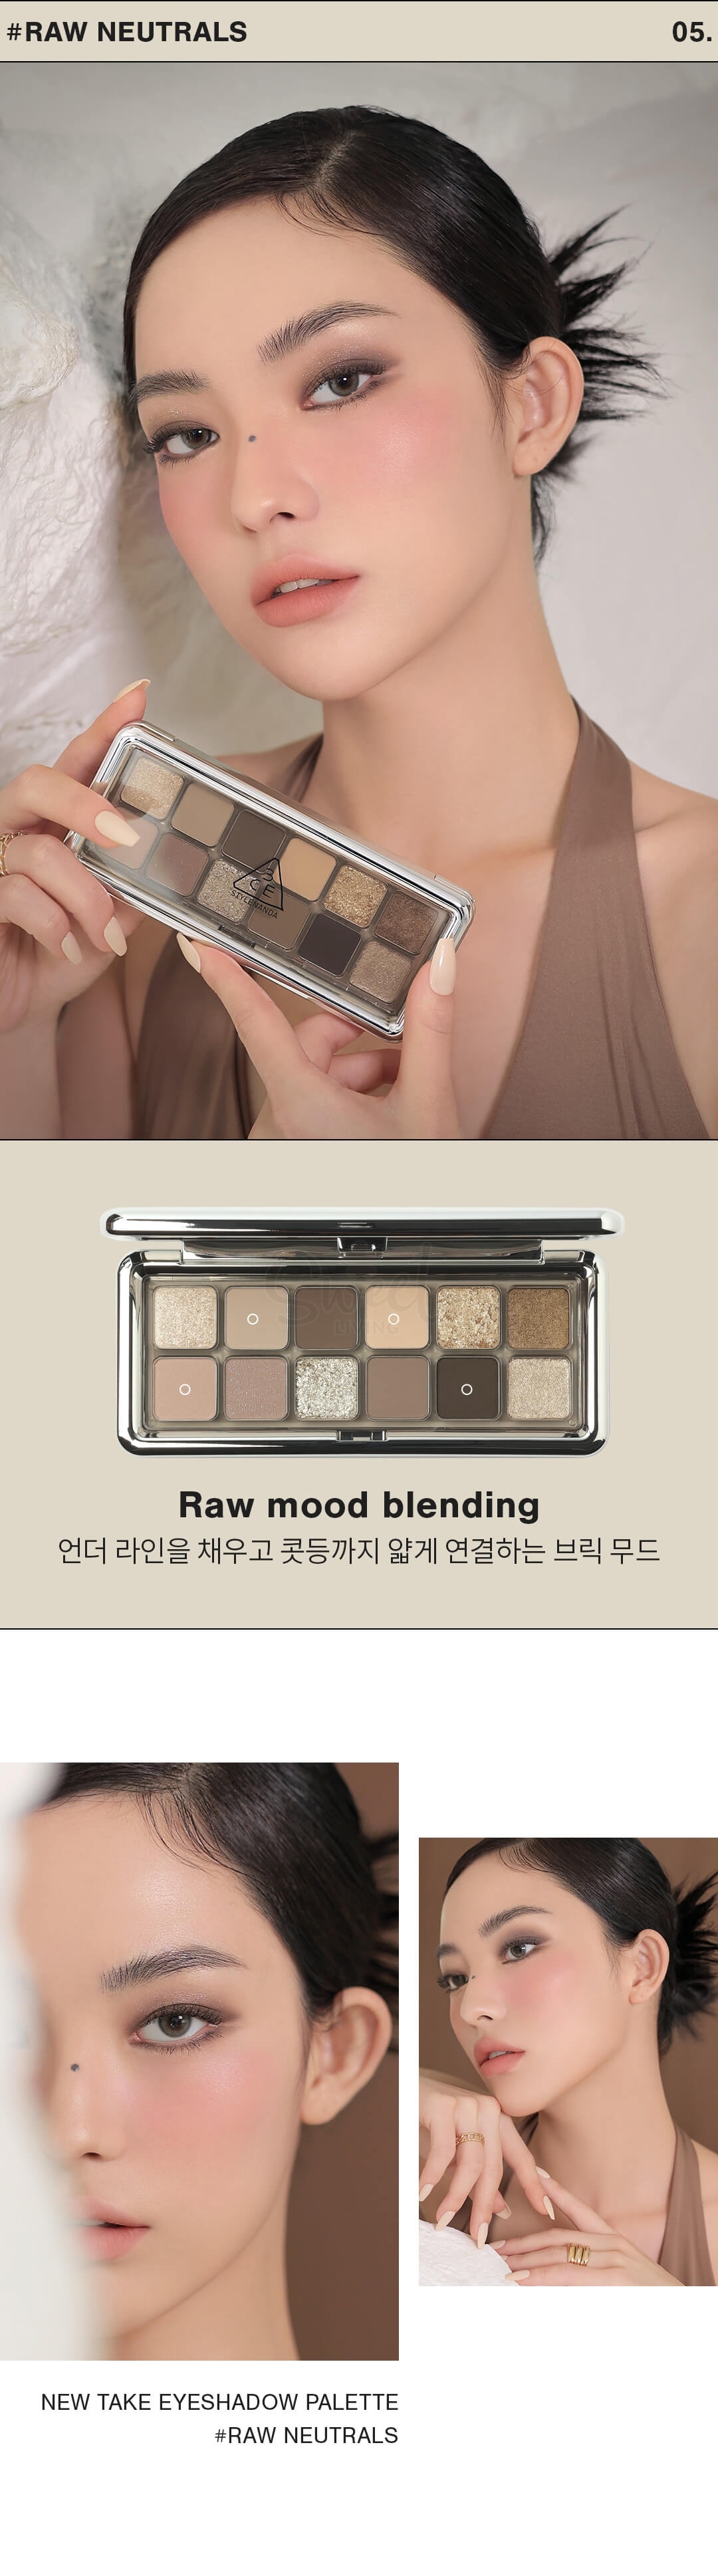 【韩国 3CE】新款12色眼影盘 大地色水泥盘 raw neurals 套装送镜子+眼影刷 -  - 9@ - Sweet Living